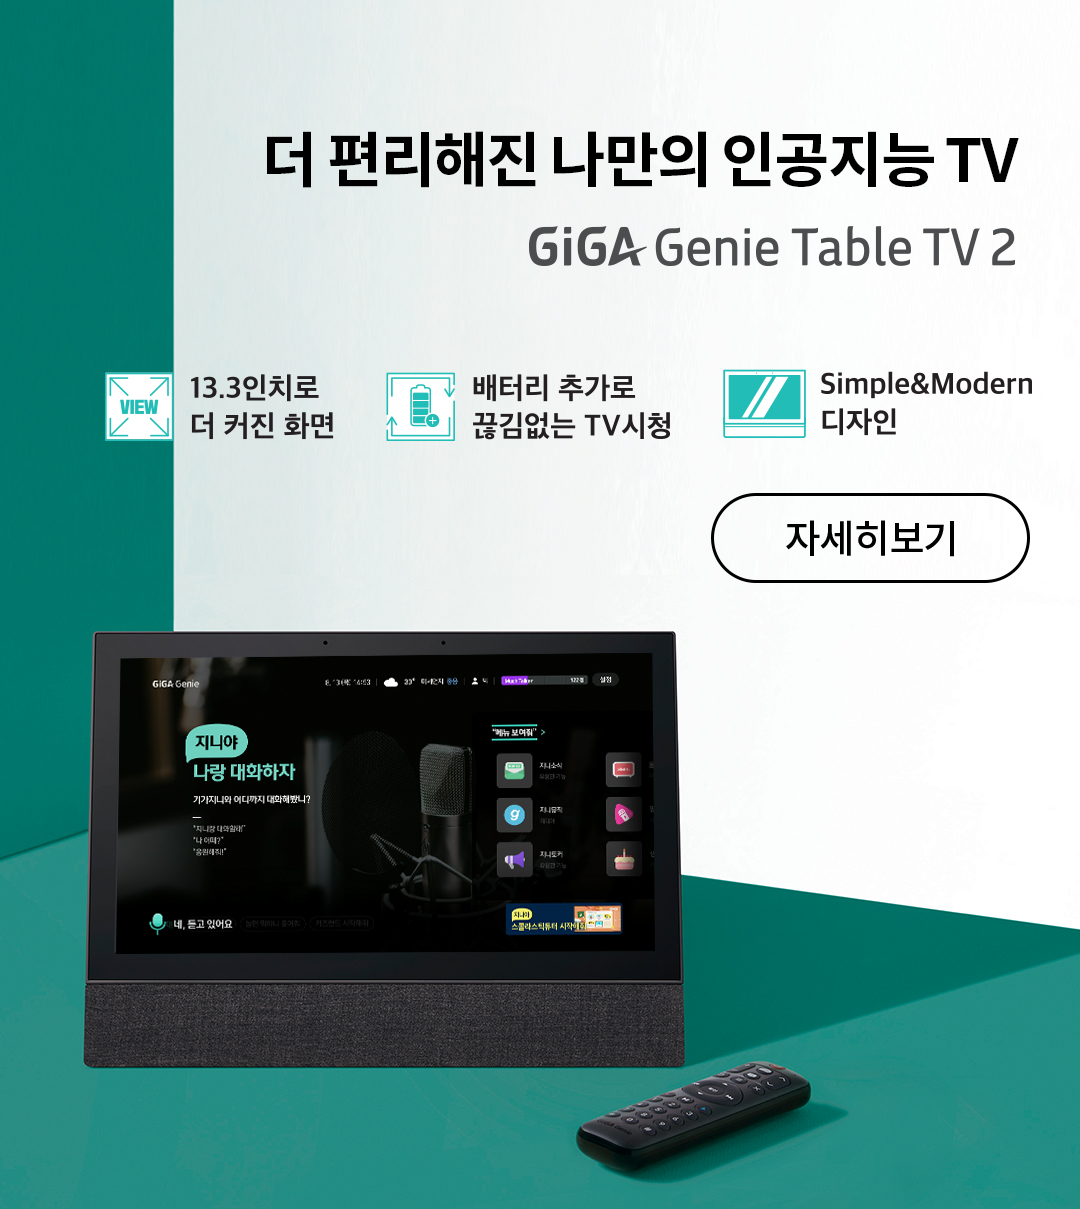 더 편리해진 나만의 인공지능 TV. GiGA Genie Table TV 2
							13.3인치로 더 커진 화면, 배터리 추가로 끊김없는 TV시청, Simple&Modern 디자인. 자세히보기